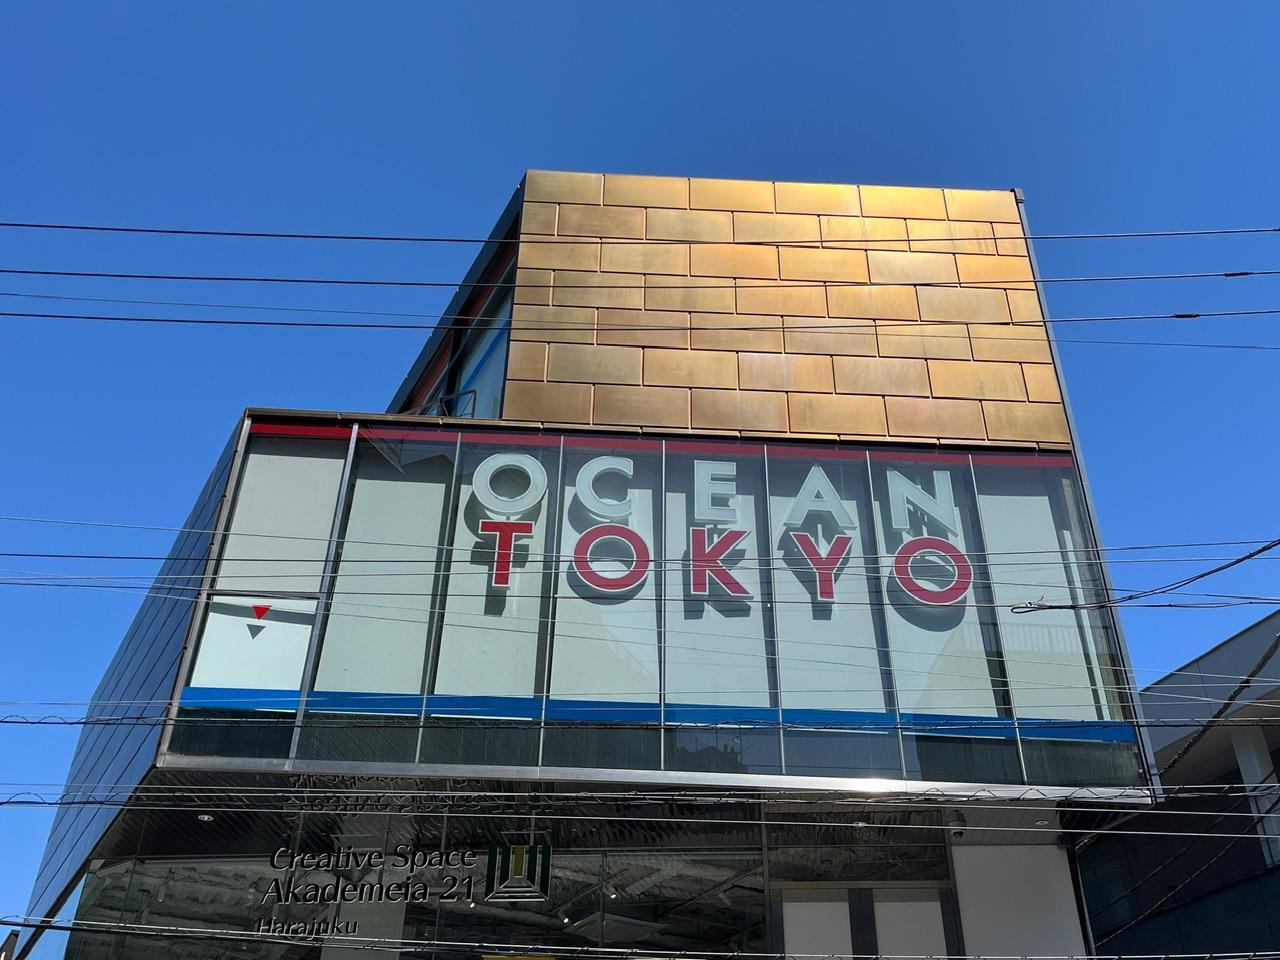 OCEAN TOKYO 本店(オーシャントーキョー)